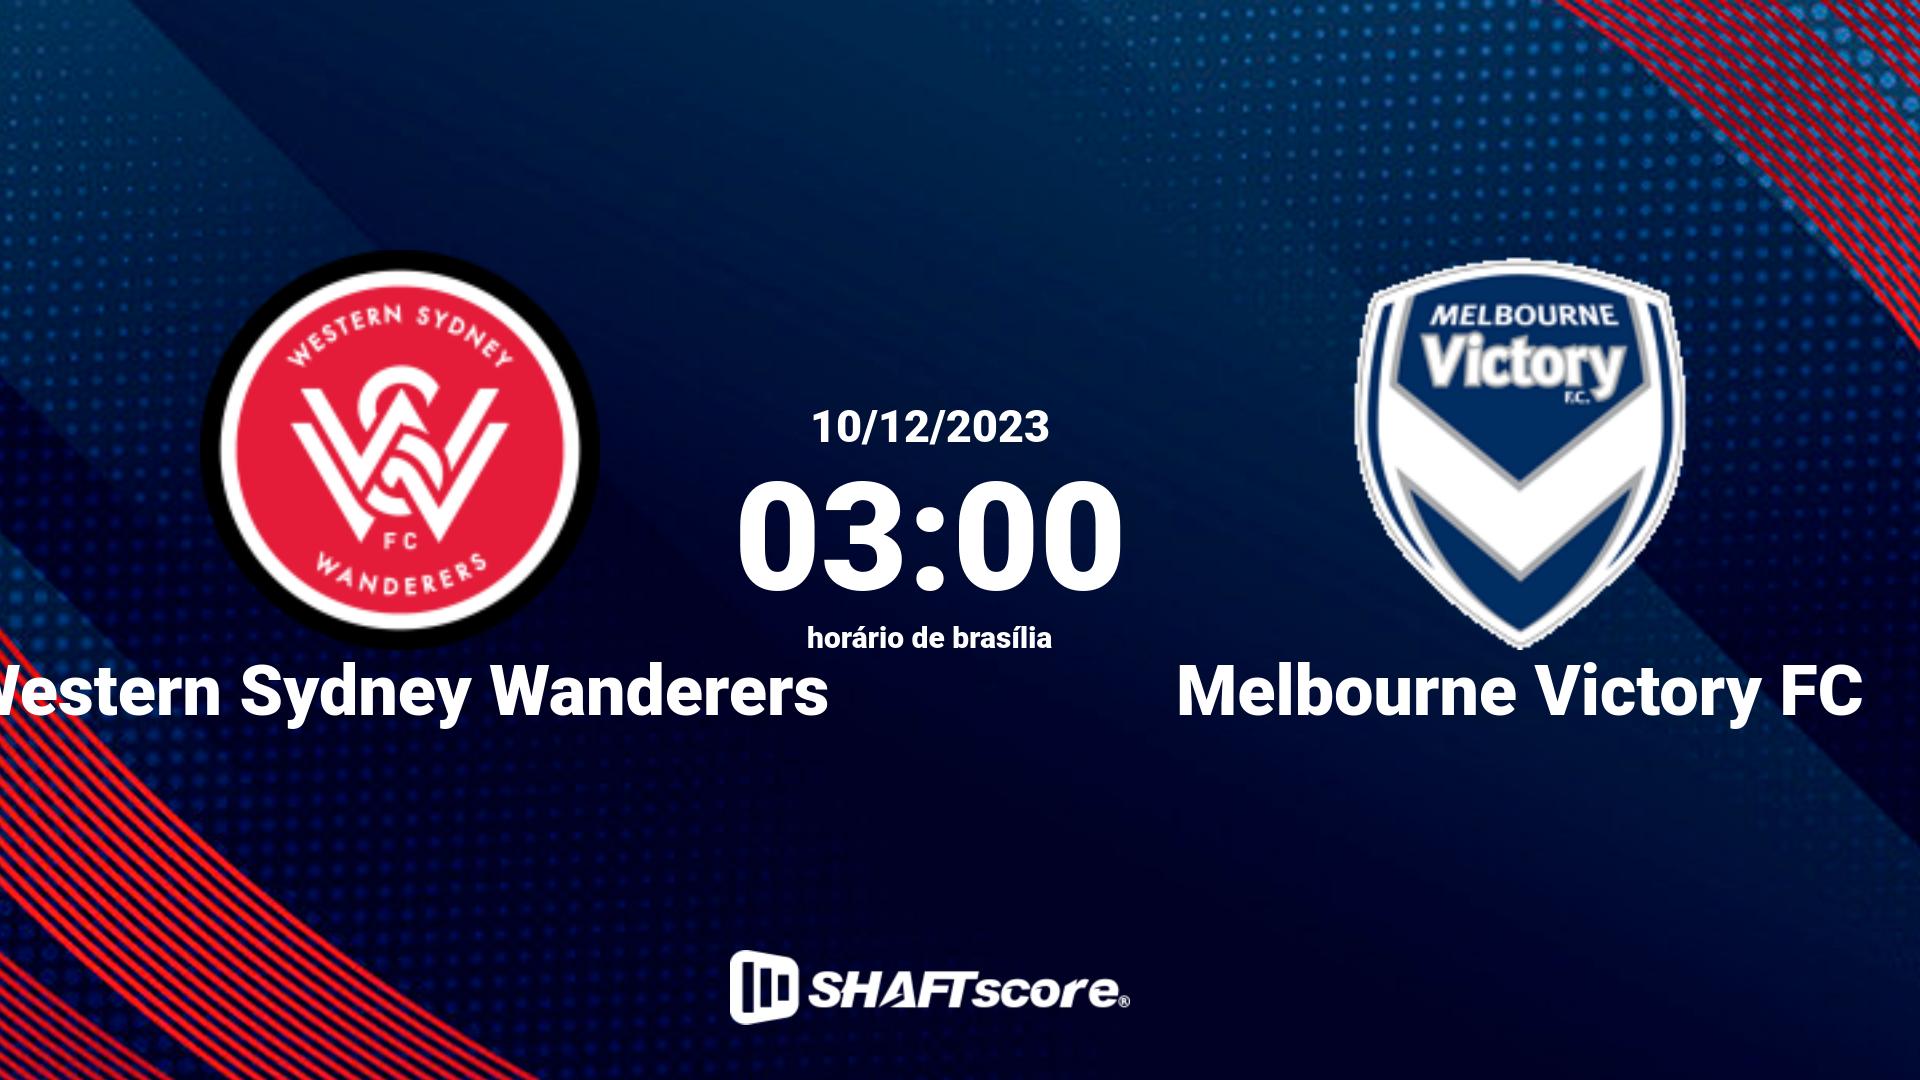 Estatísticas do jogo Western Sydney Wanderers vs Melbourne Victory FC 10.12 03:00